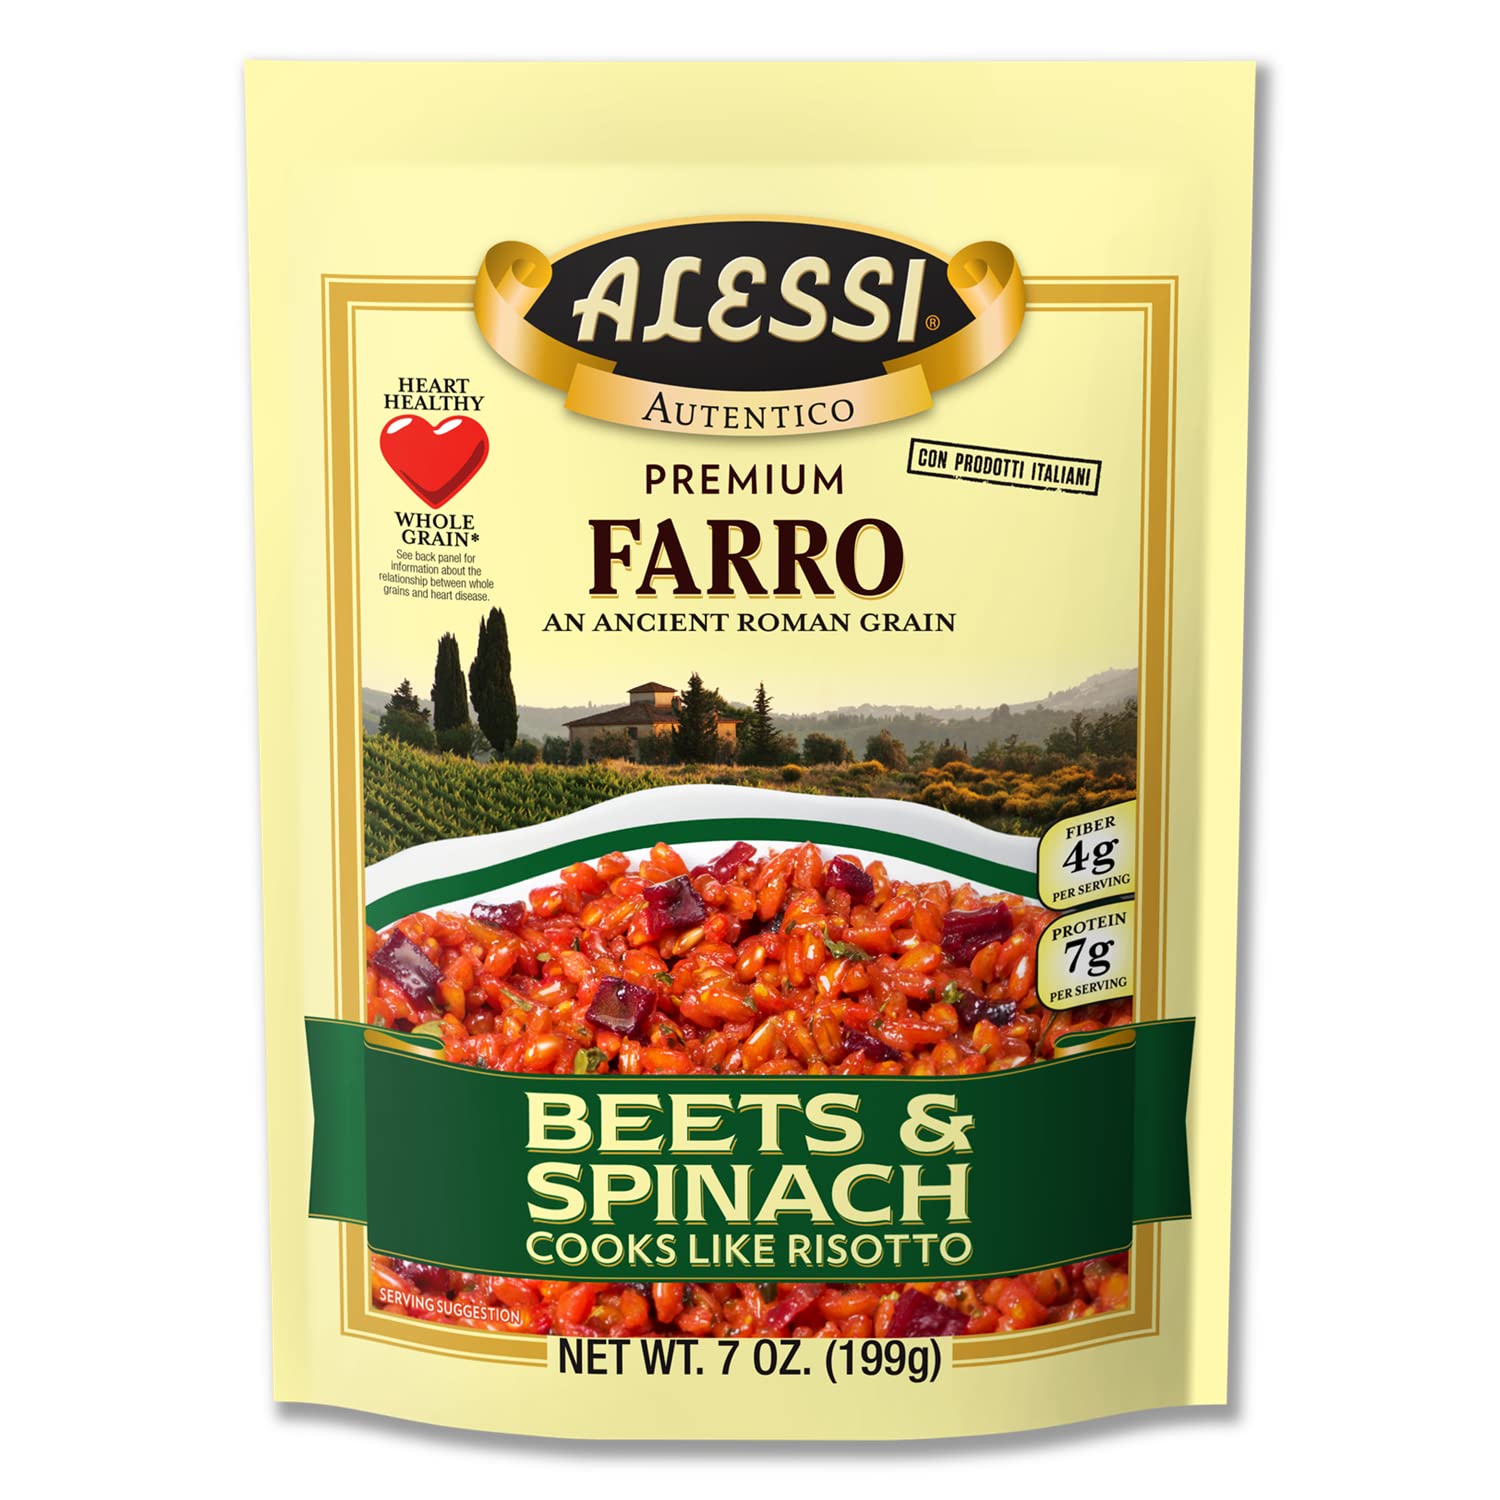 Alessi Autentico, Premium Seasoned Roman Grain Farro, Cooks Like Risotto, Heart Healthy, Easy to Prepare, 7oz (Beets & Spinach, Pack of 6)